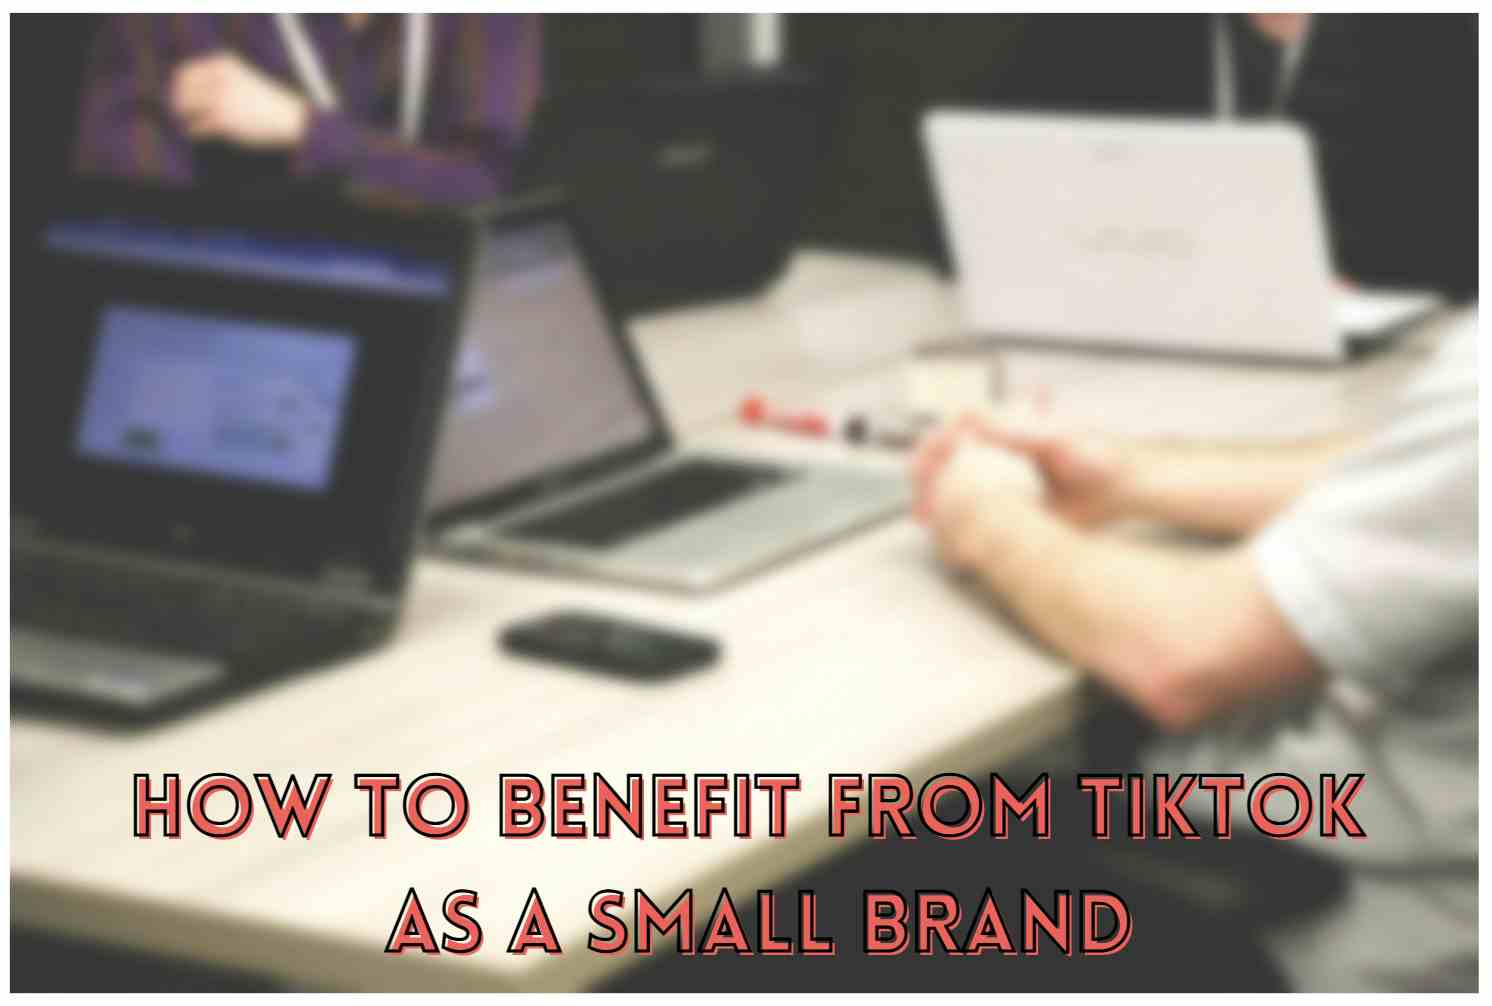 Cách hưởng lợi từ TikTok với tư cách là một thương hiệu nhỏ